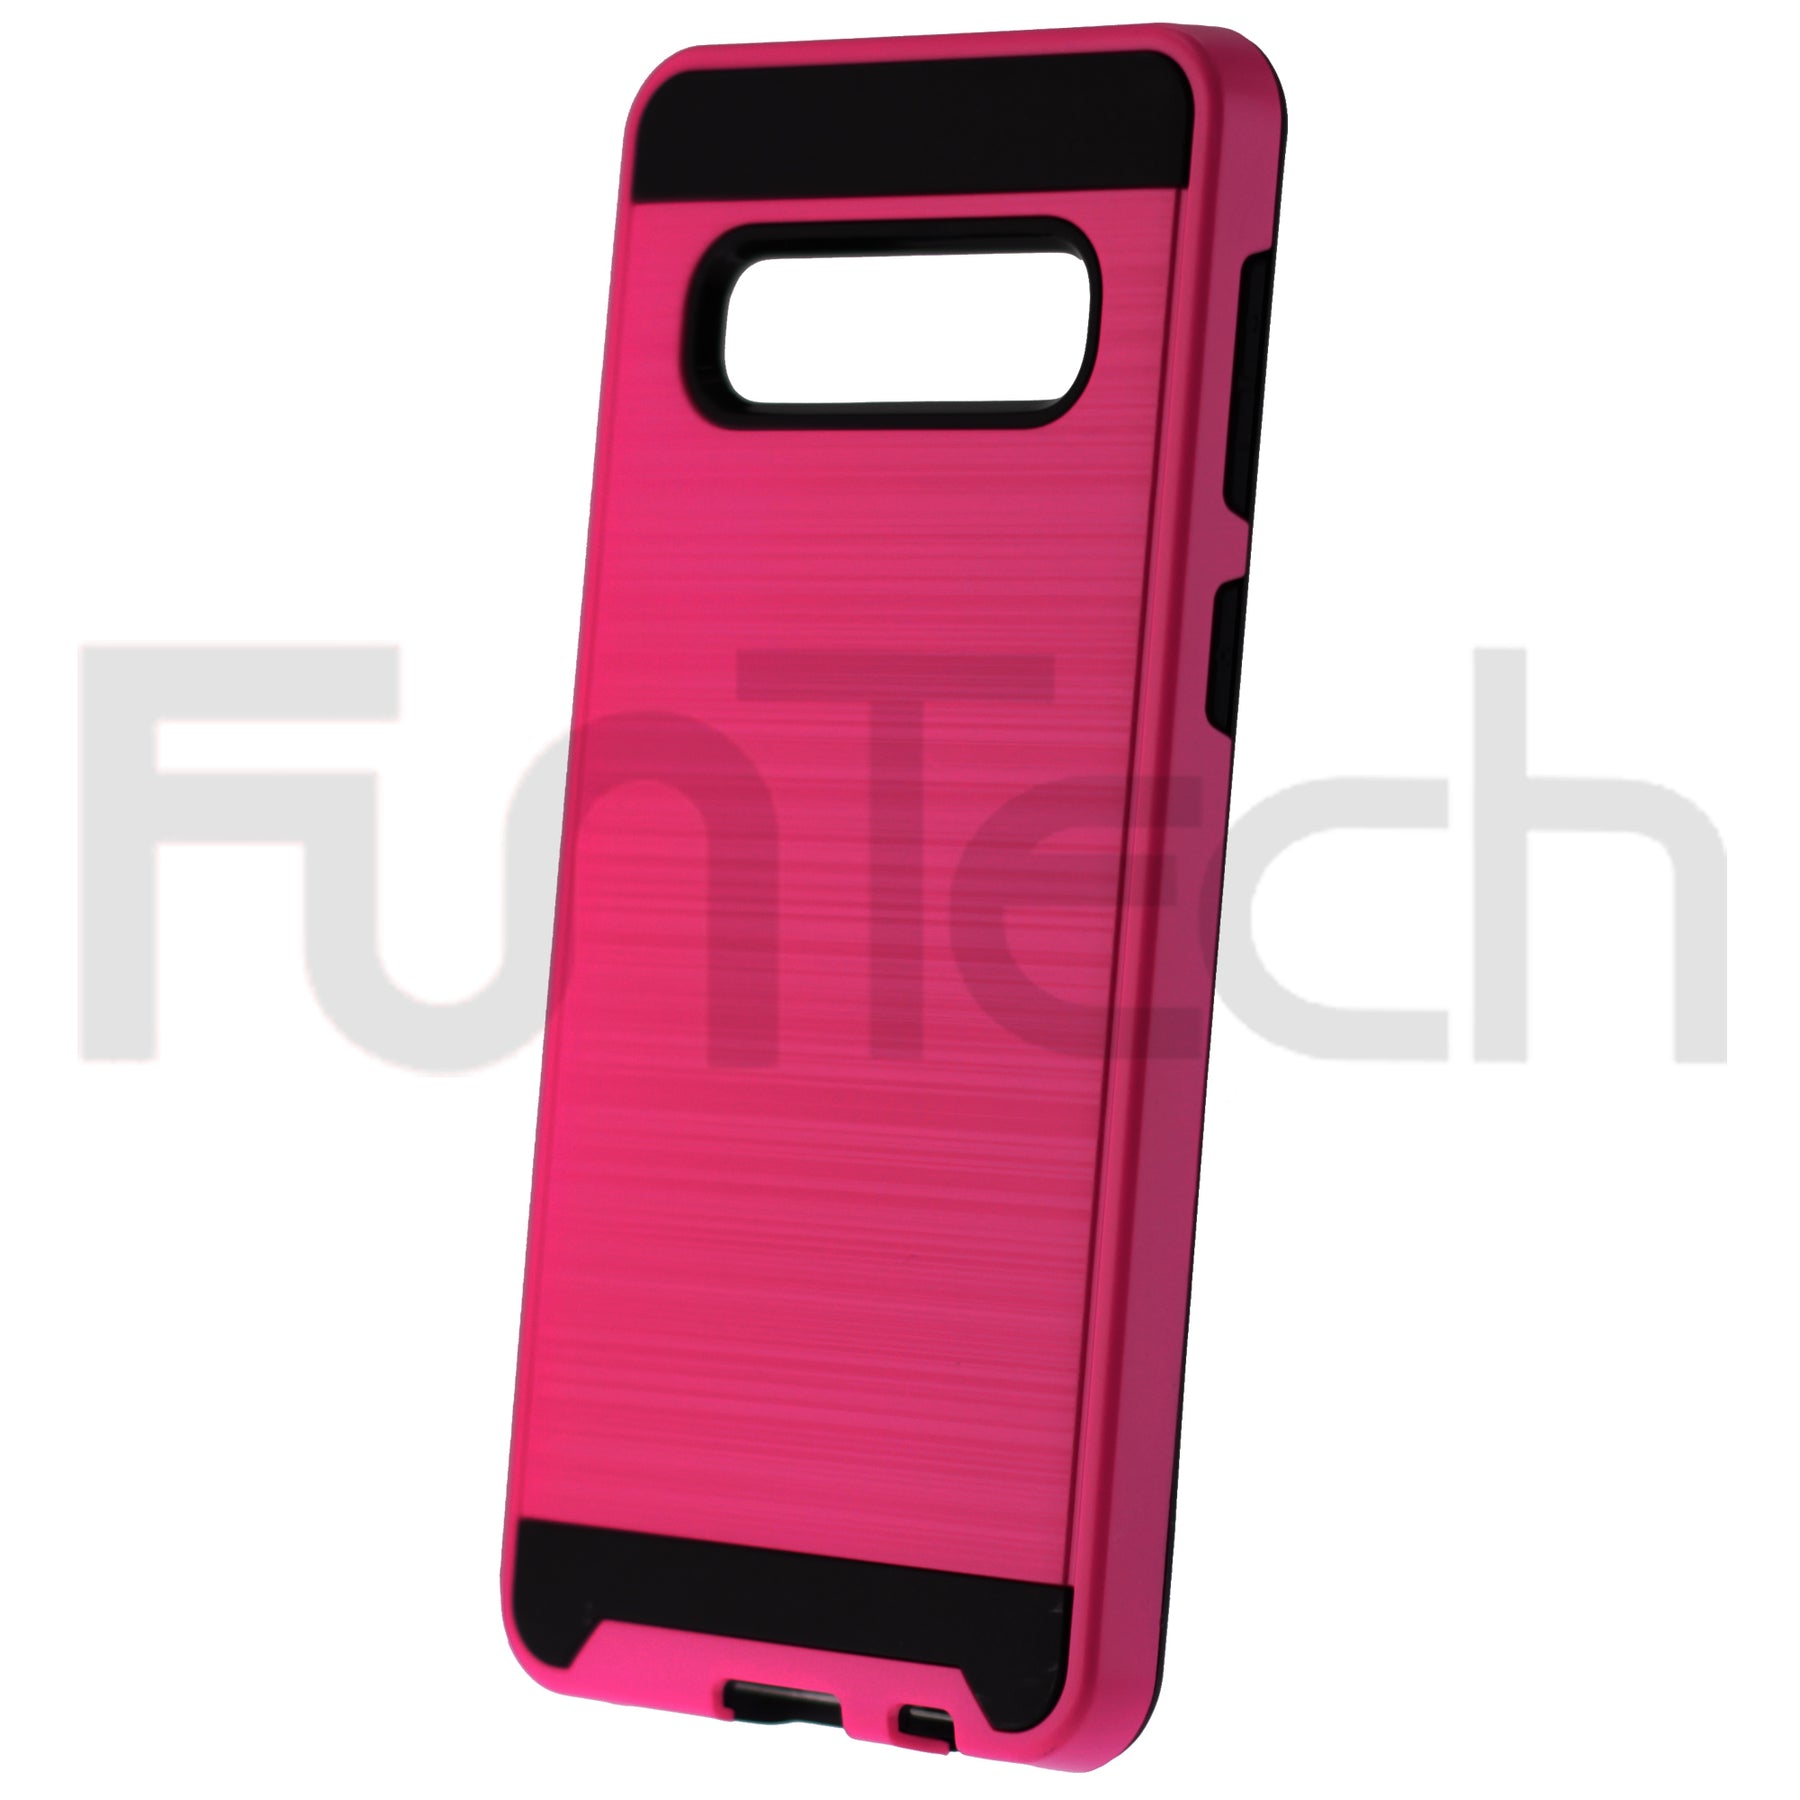 Samsung S10, Slim Armor Back Case, Color Pink.